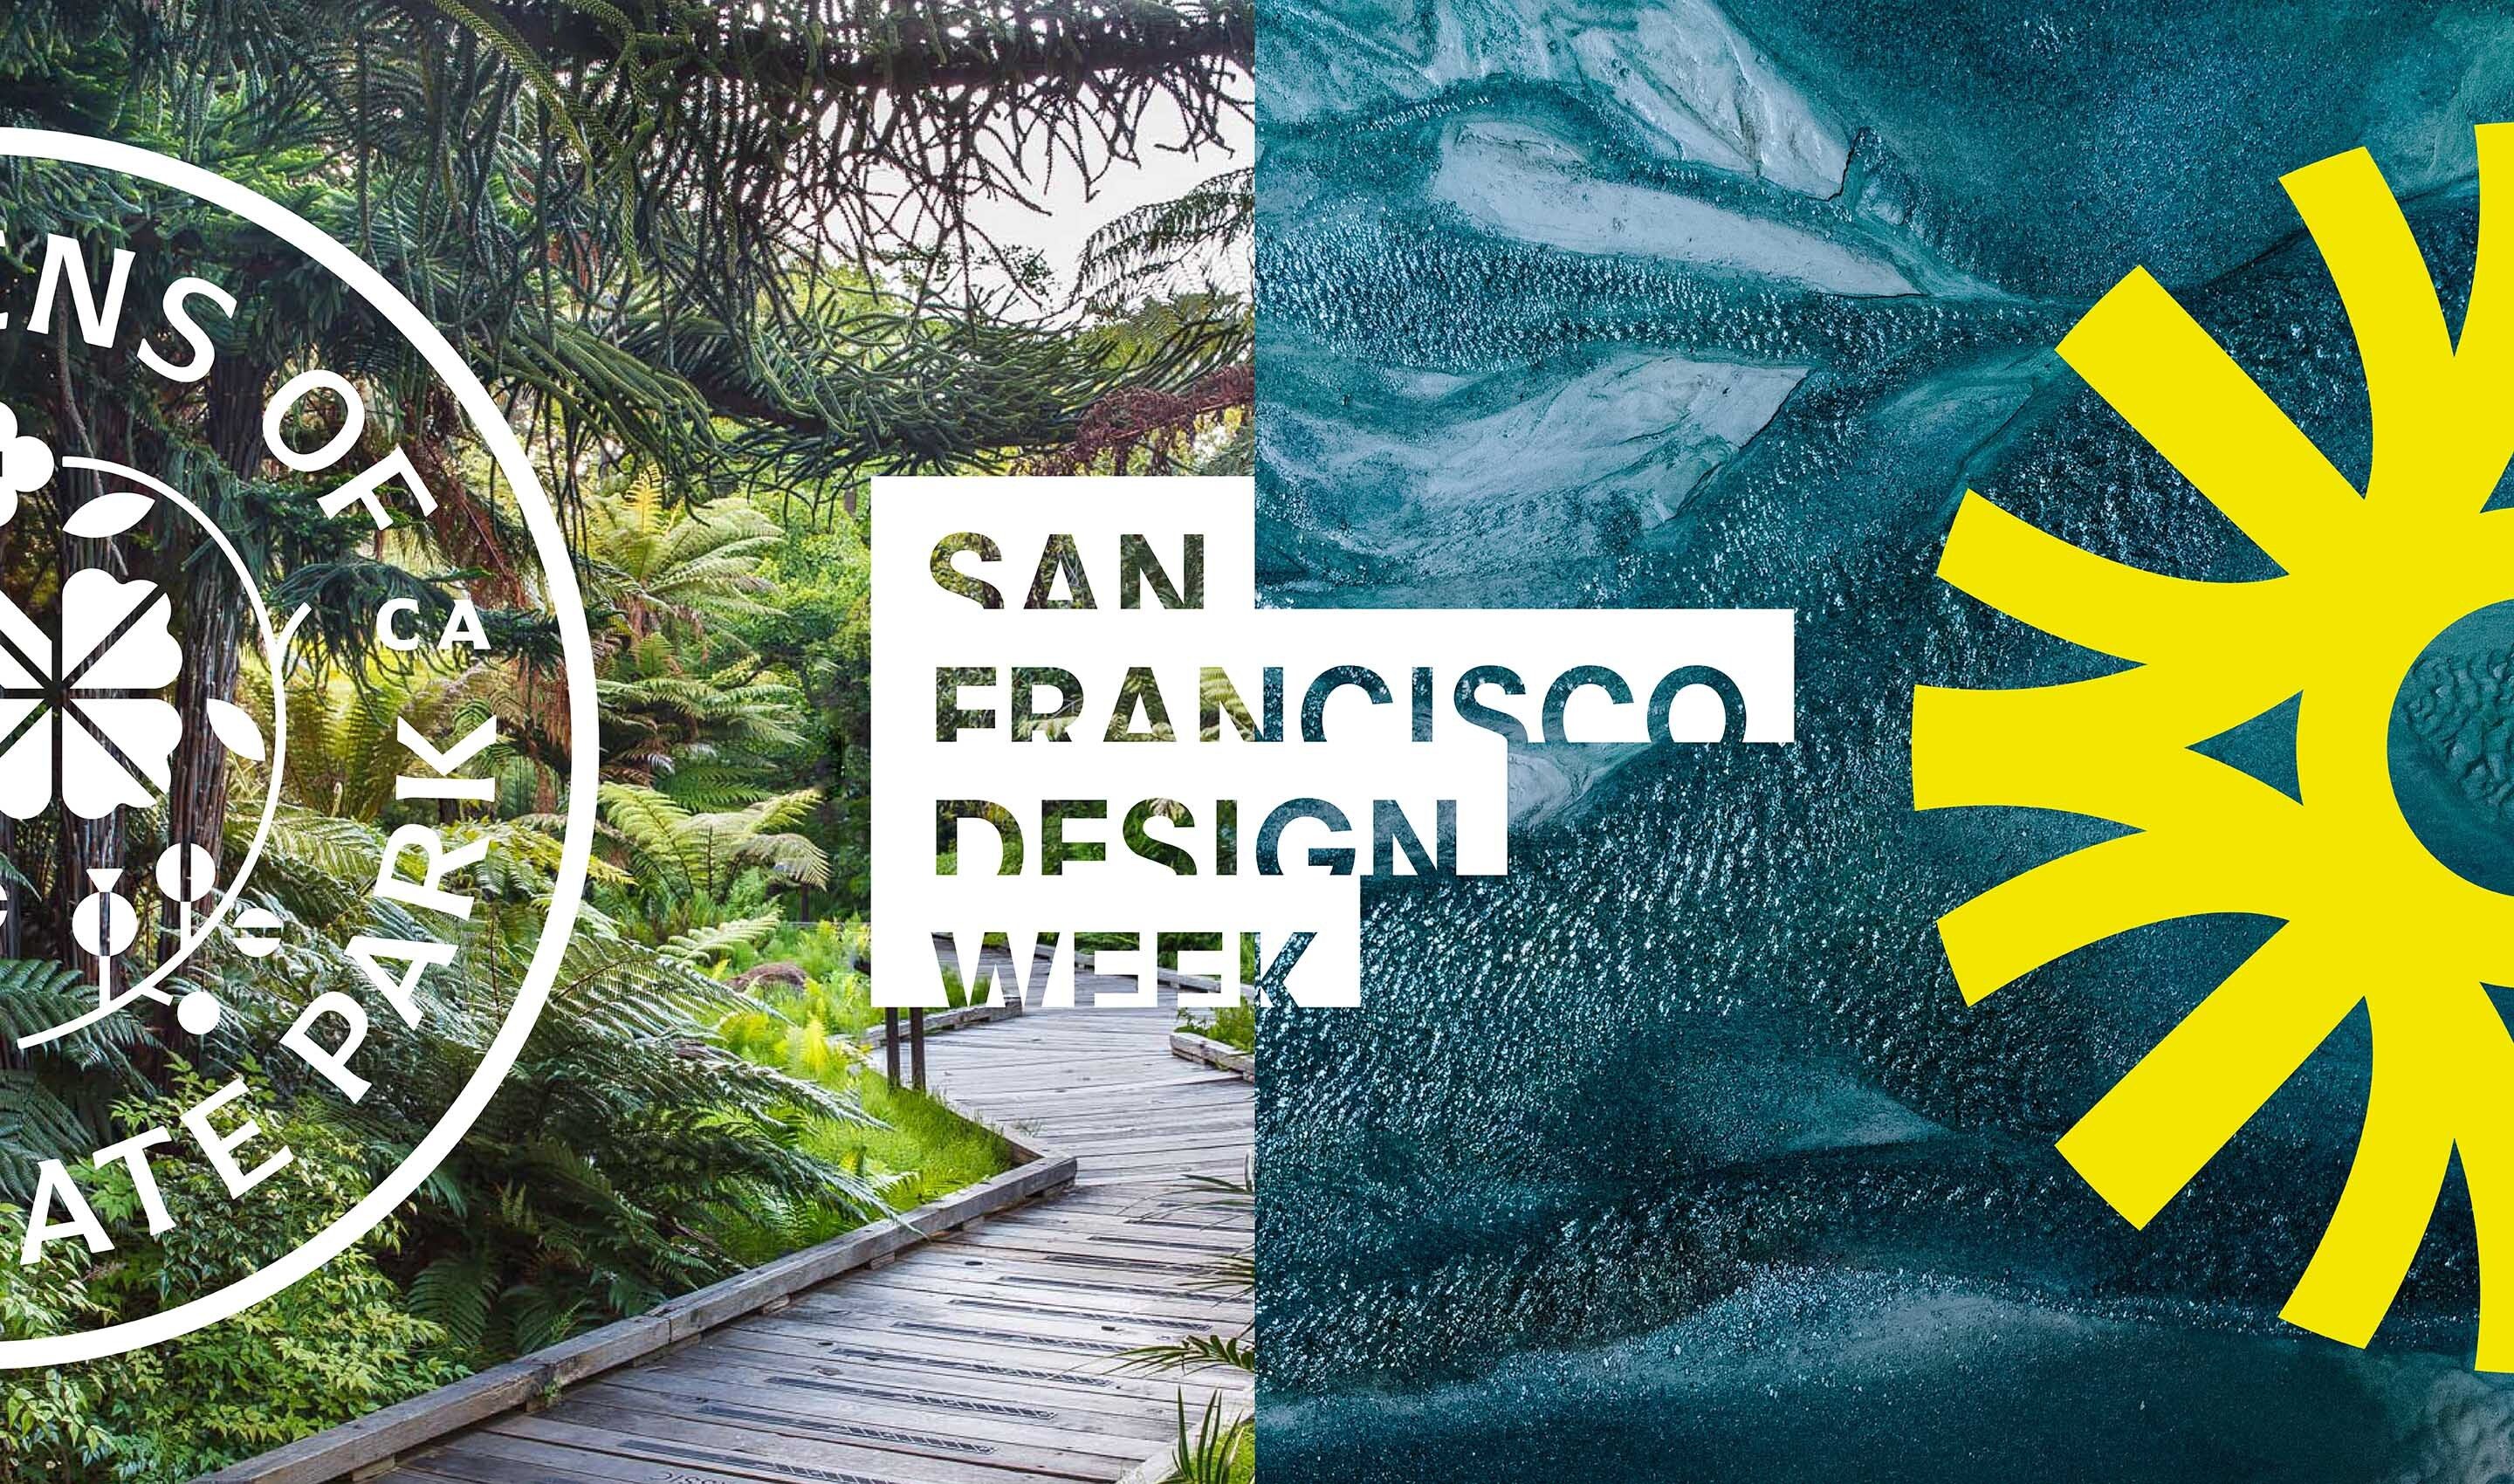 Office SF Design Week Project Dandlion GGGP